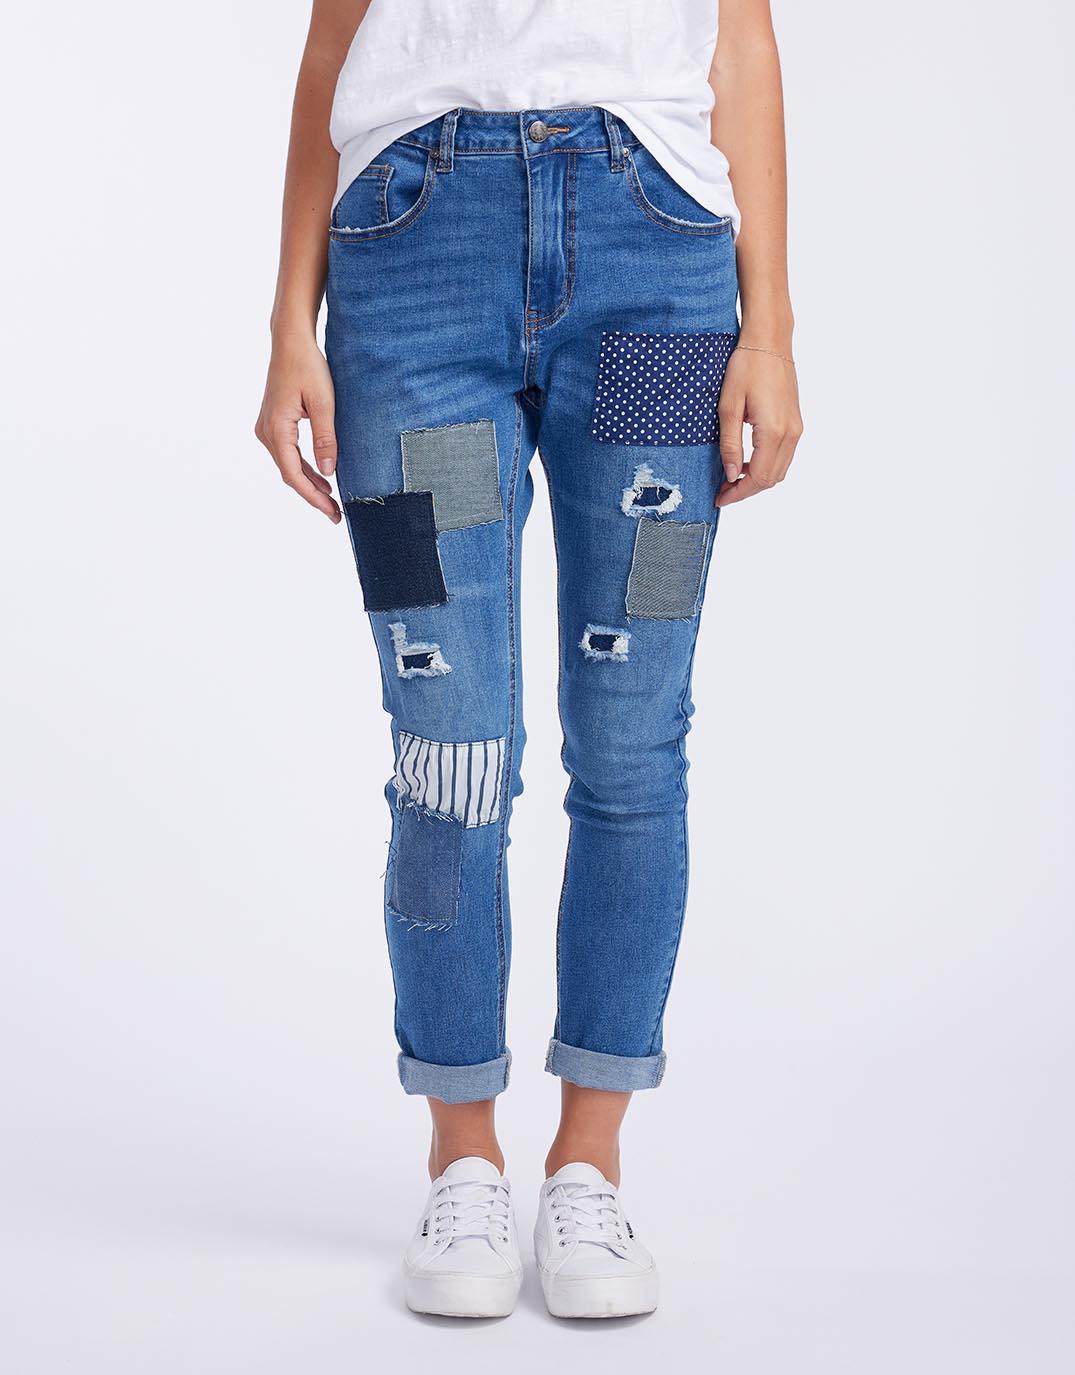 Buy Sofia Patch Jeans - Denim Threadz for Sale Online Australia | White ...